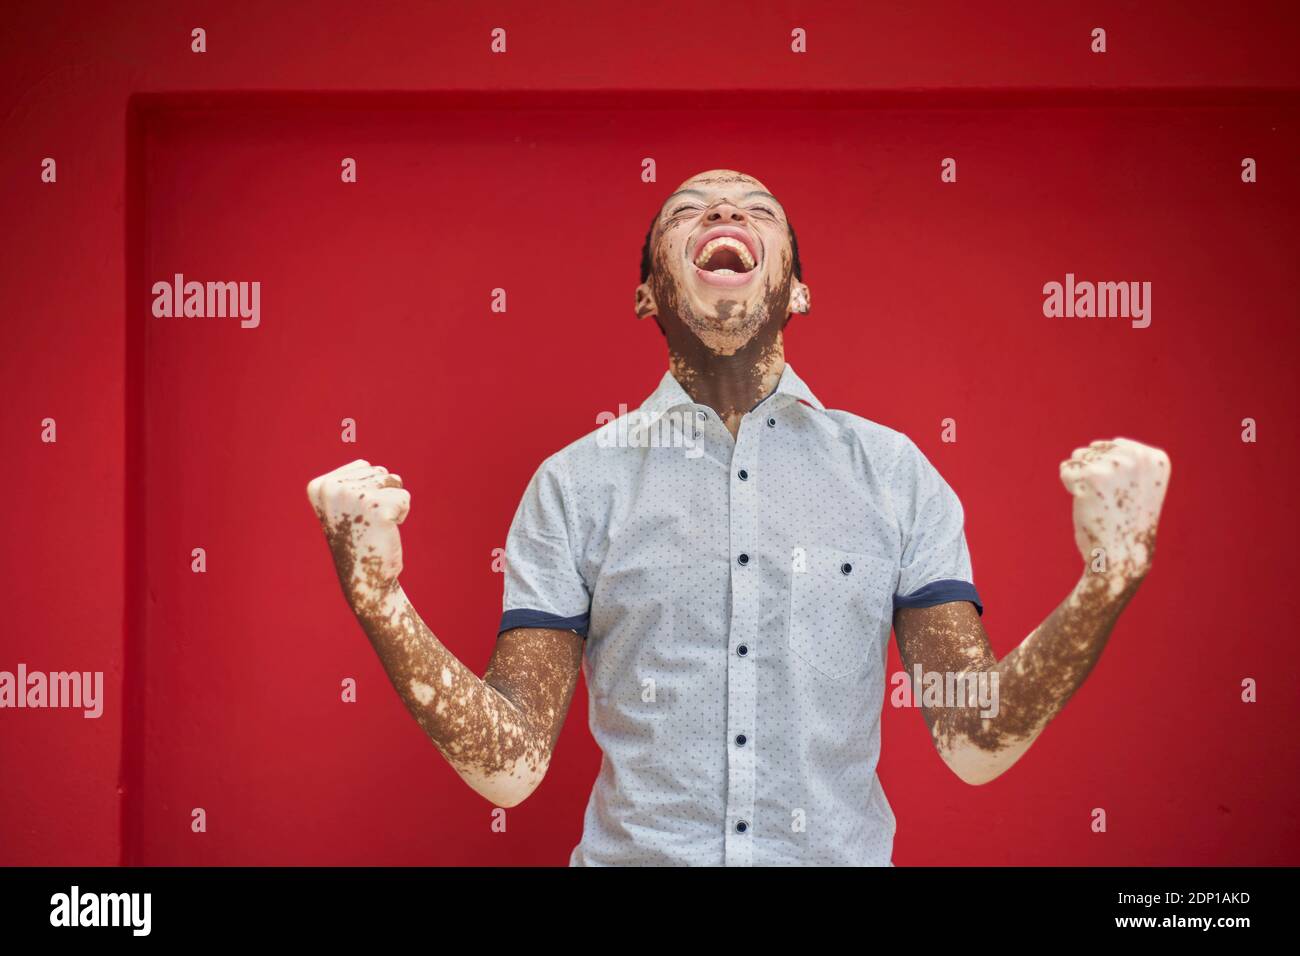 Joven con vitiligo gritando con alegría y riendo en una pared roja Foto de stock